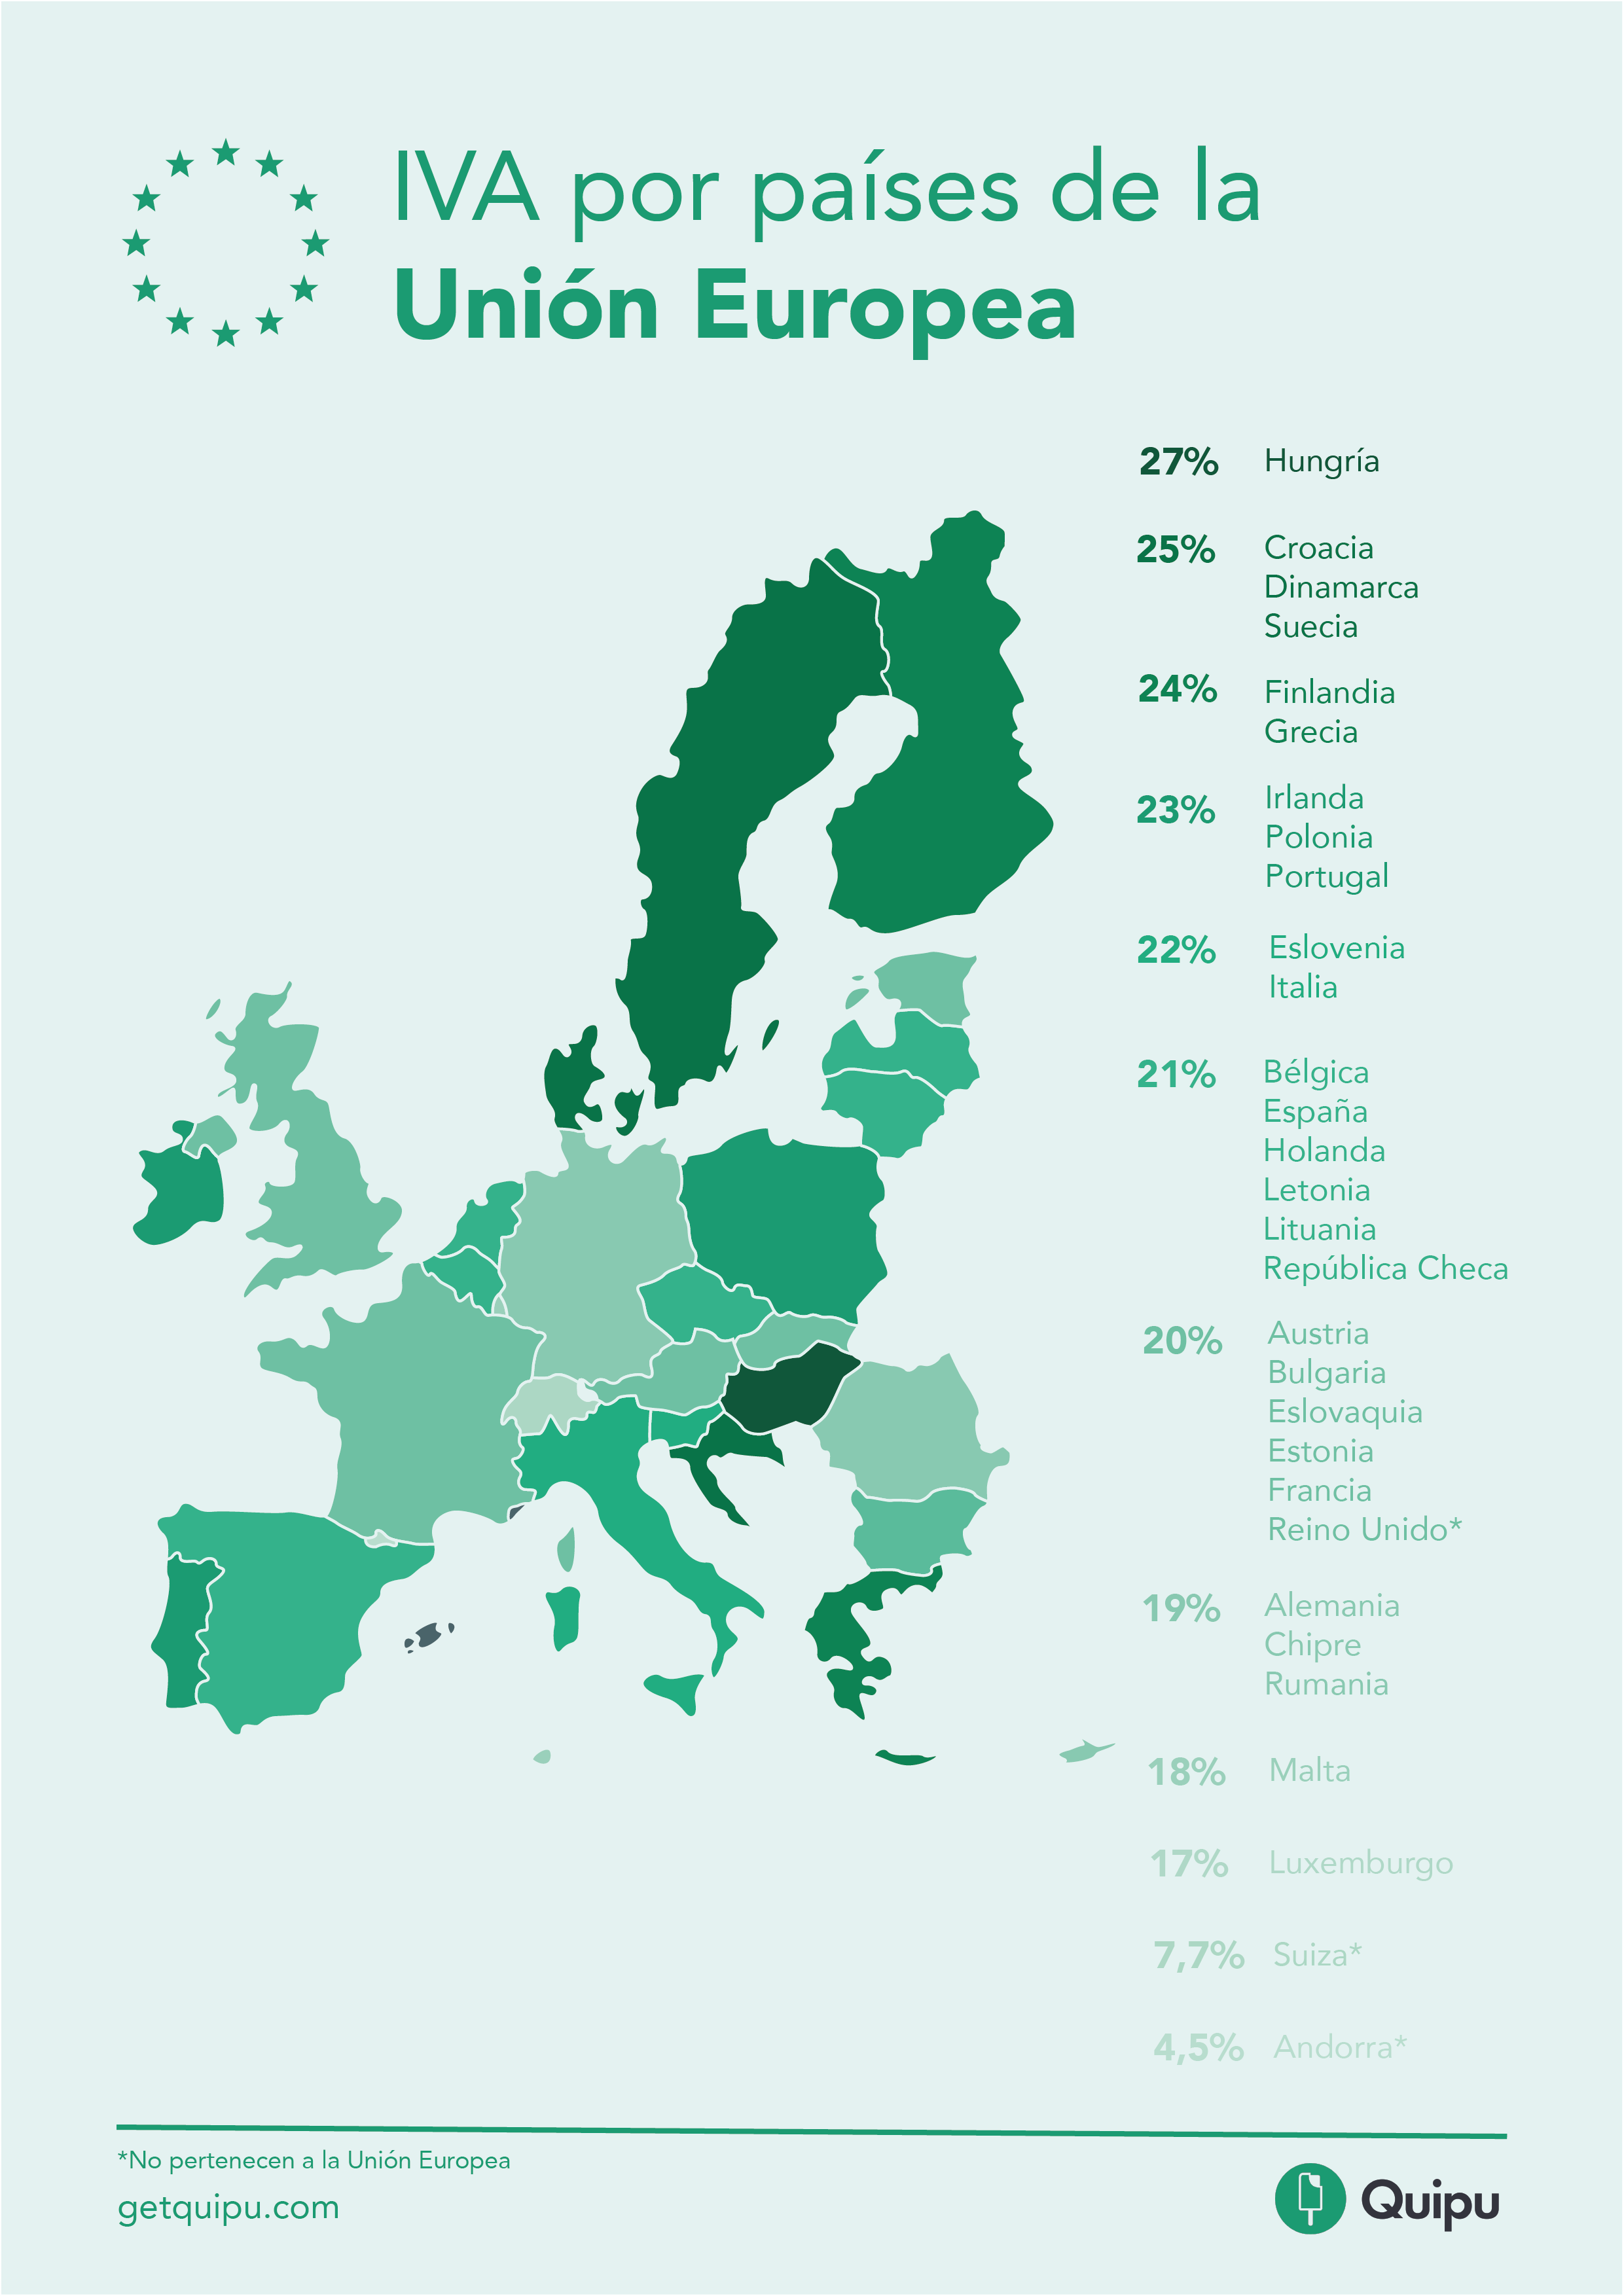 IVA en Europa tipos y comparativa entre países